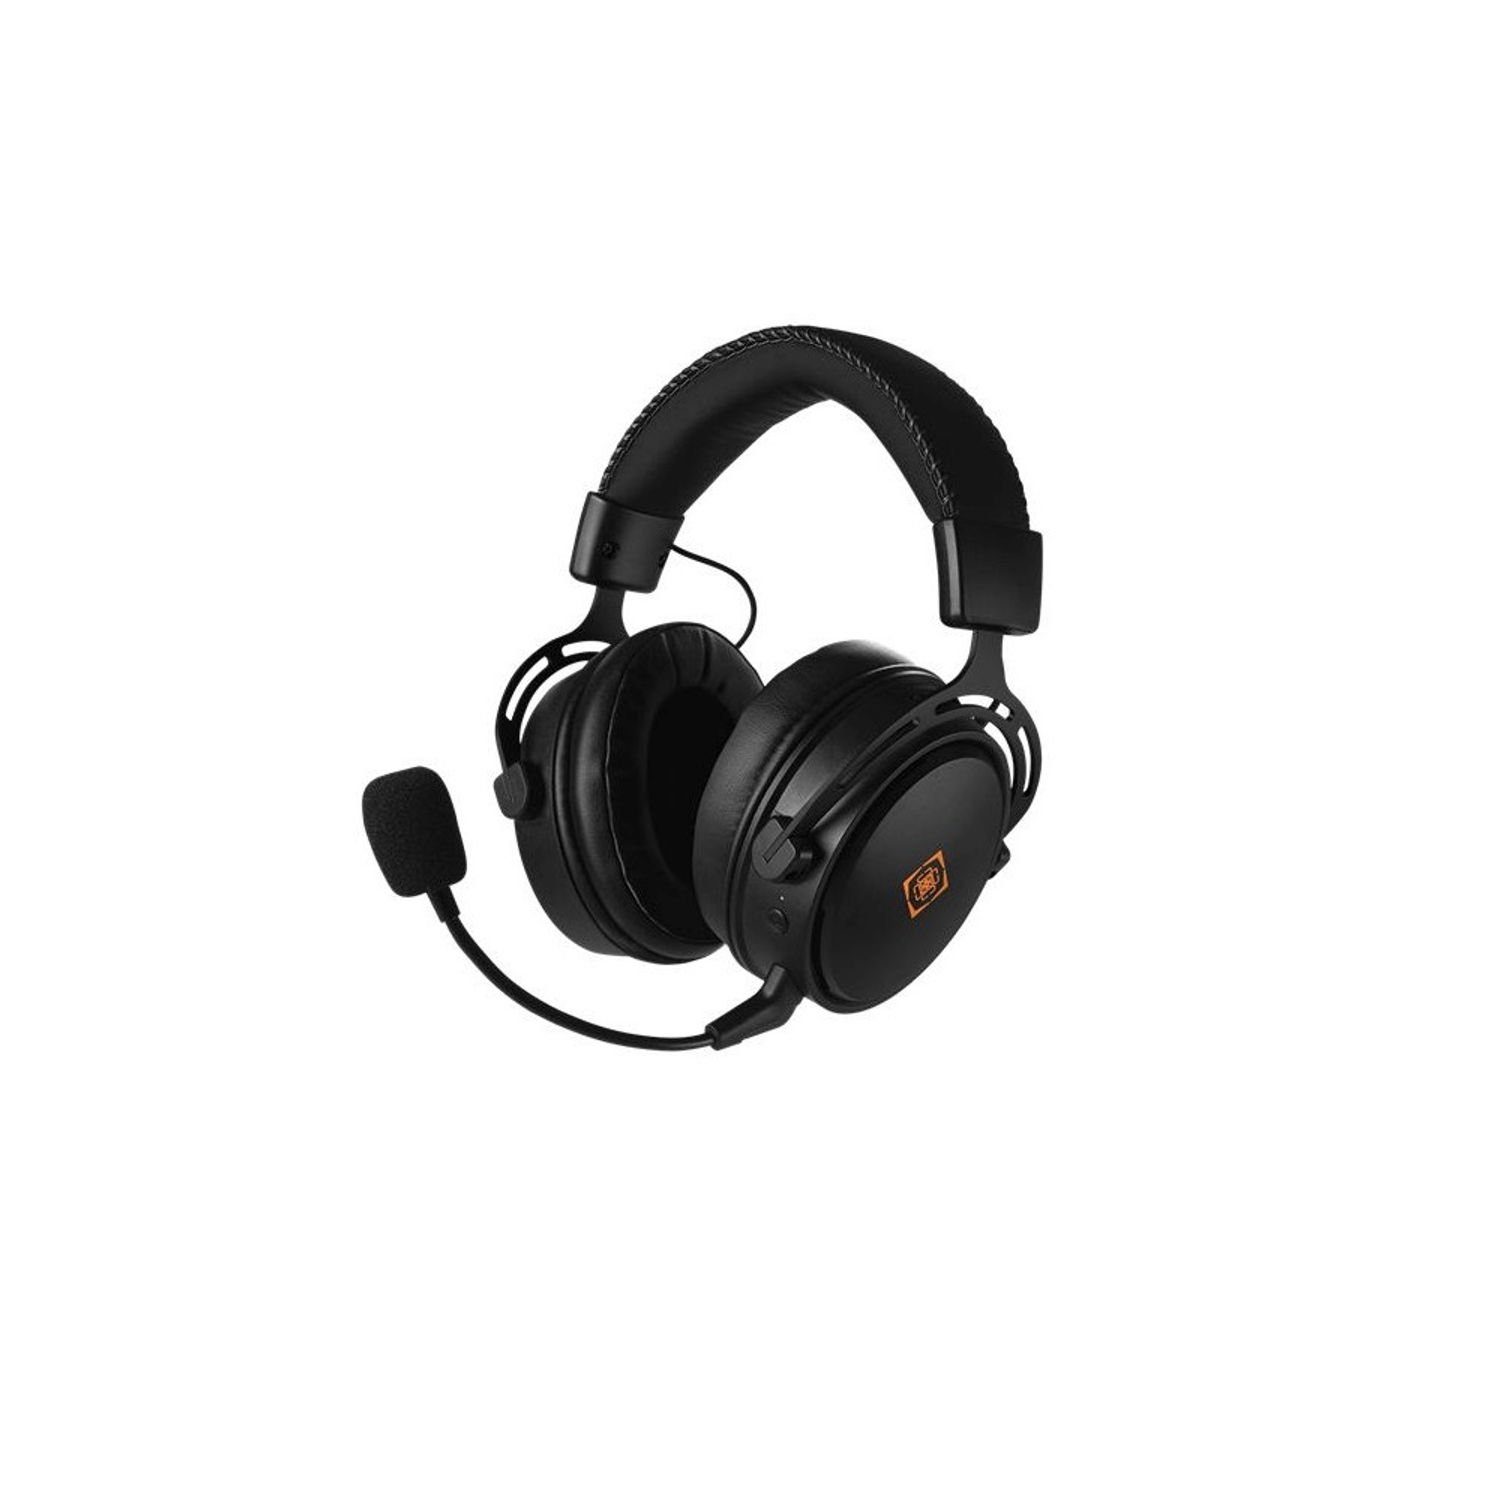 DELTACO DH410 Kabelloses Gaming Headset Kopfhörer (verstellbar, 3,5-mm-Kabel) Headset (inkl. 5 Jahre Herstellergarantie) schwarz